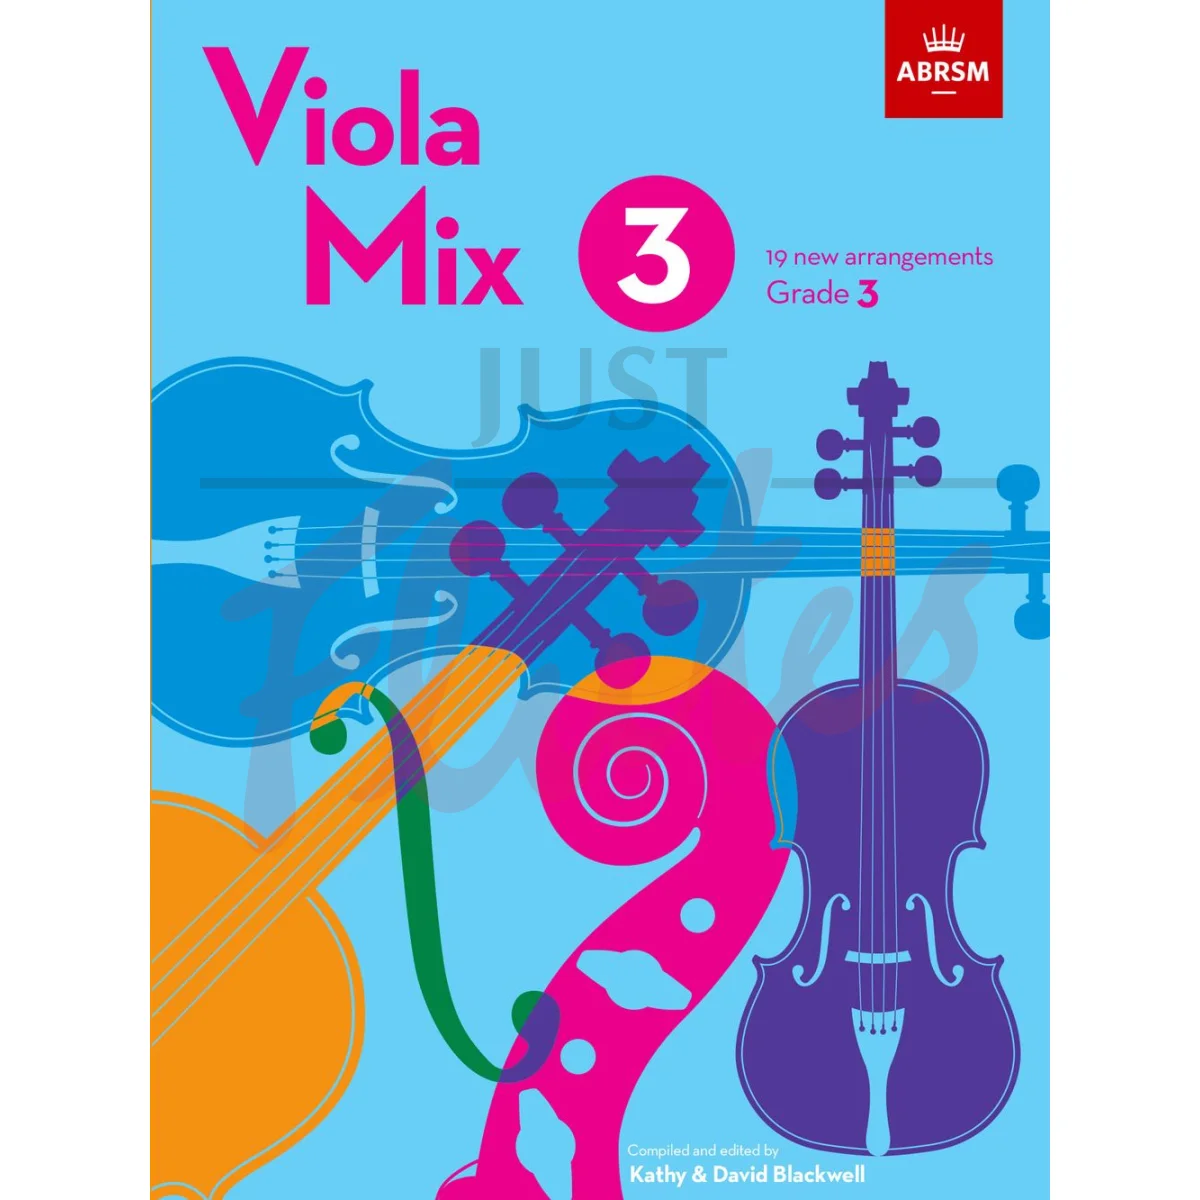 Viola Mix 3